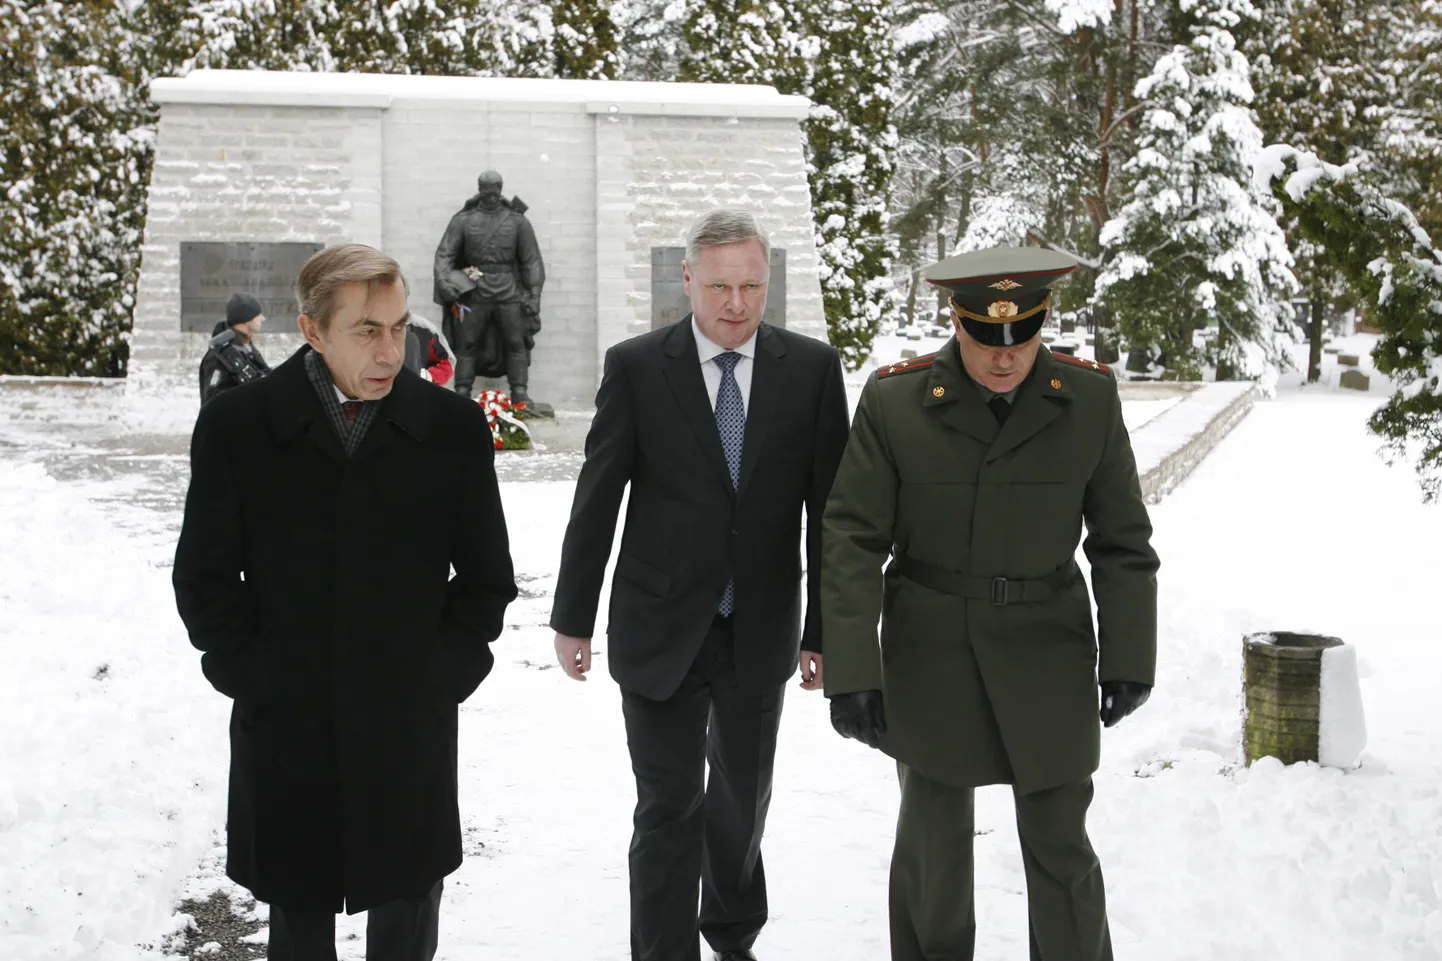 Venemaa asevälisminister Vladimir Titov käis koos suursaadik Nikolai Uspenskiga Siselinna kalmistul Pronkssõduri mälestusmärgi juures ning asetas sinna  pärja ja nelgid.